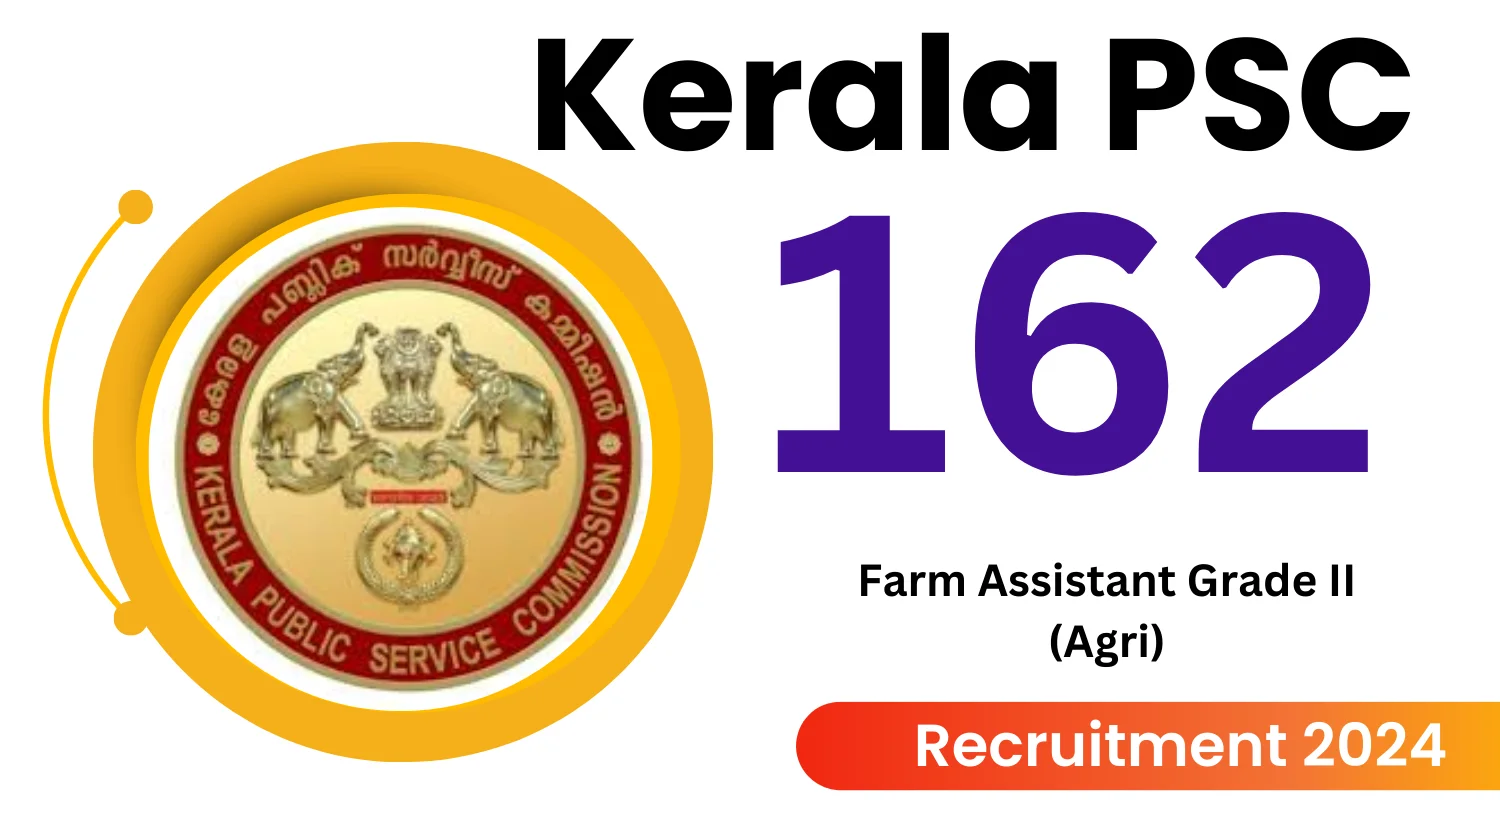 Kerala PSC Farm Assistant Grade II Agri Recruitment 2024